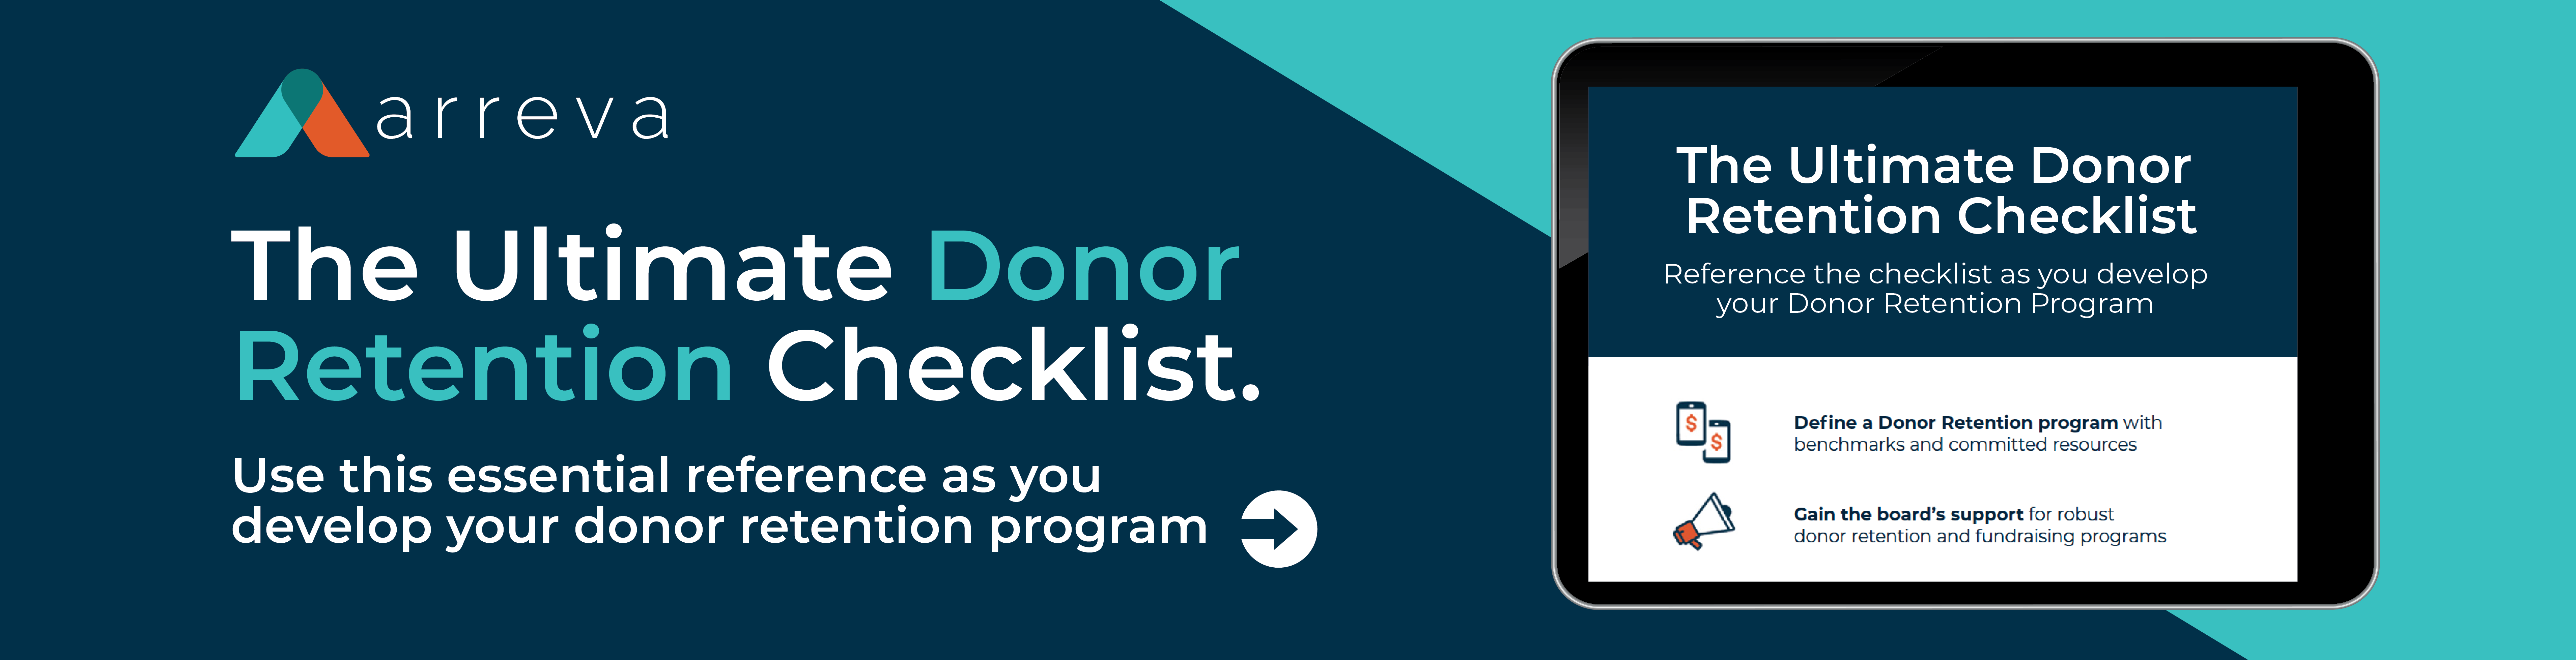 The Ultimate Donor Retention Checklist 